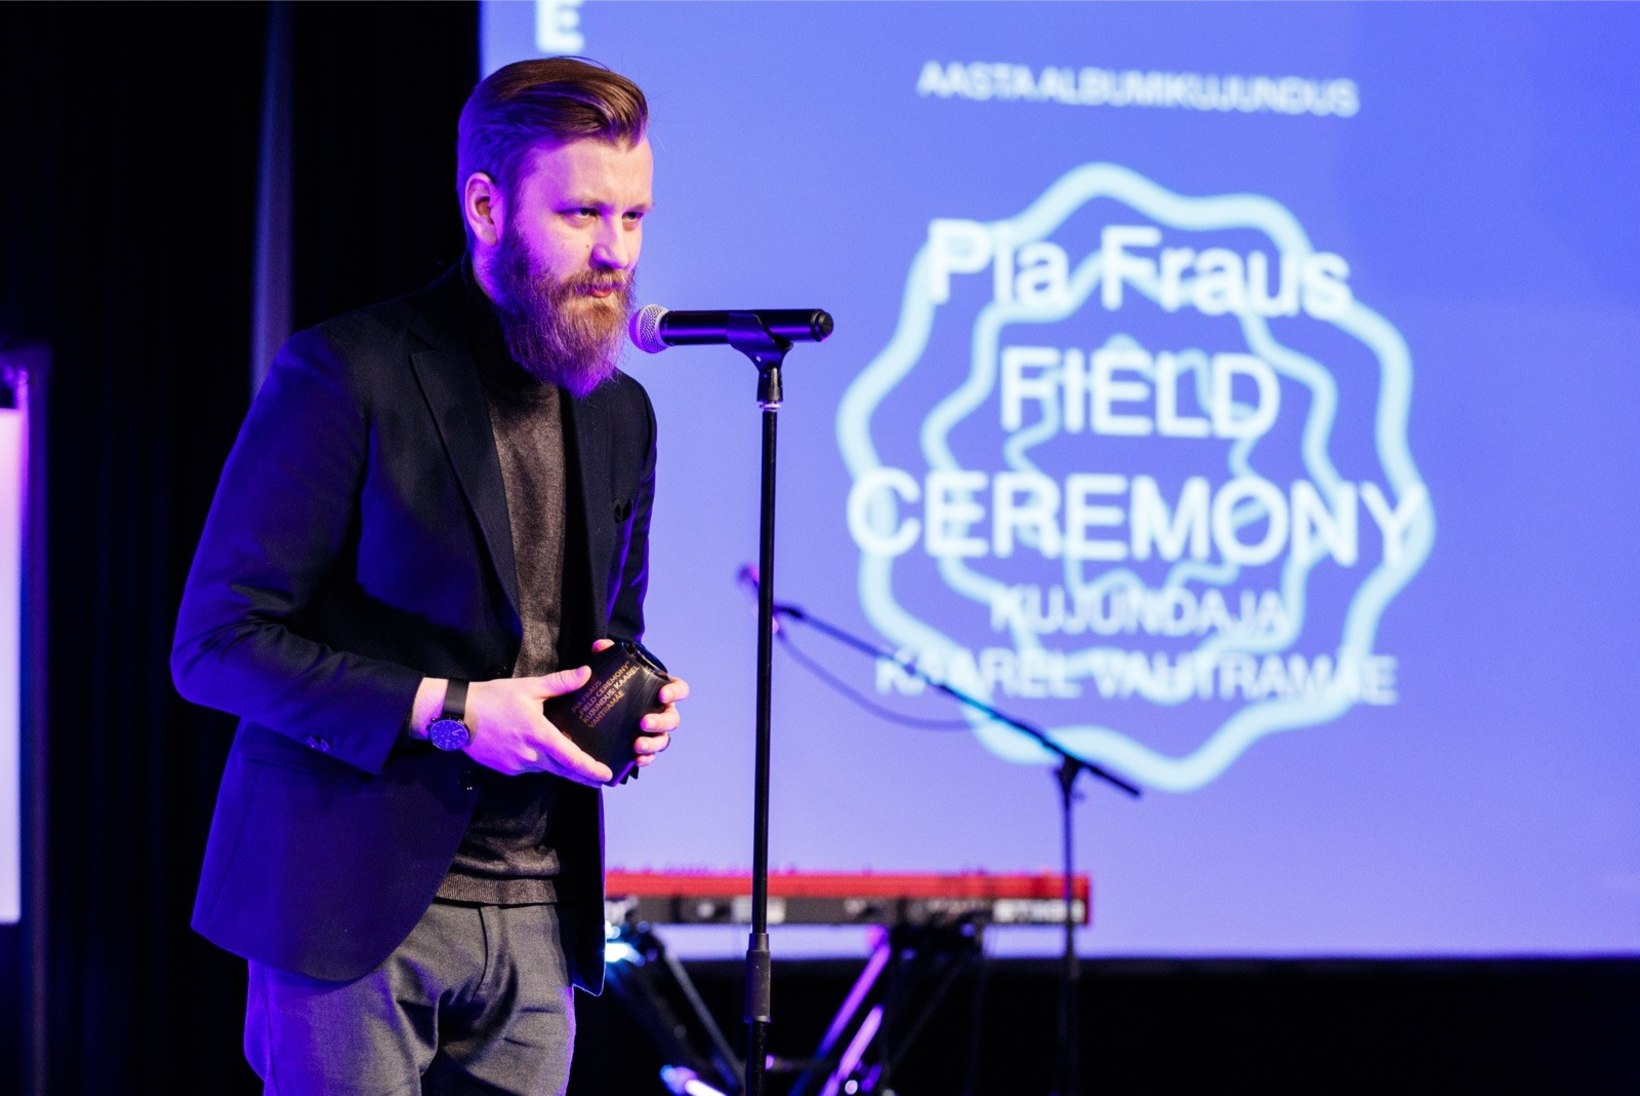 Aasta albumikujunduse laureaat Kaarel Vahtramäe: auhind tuli suure üllatusena!